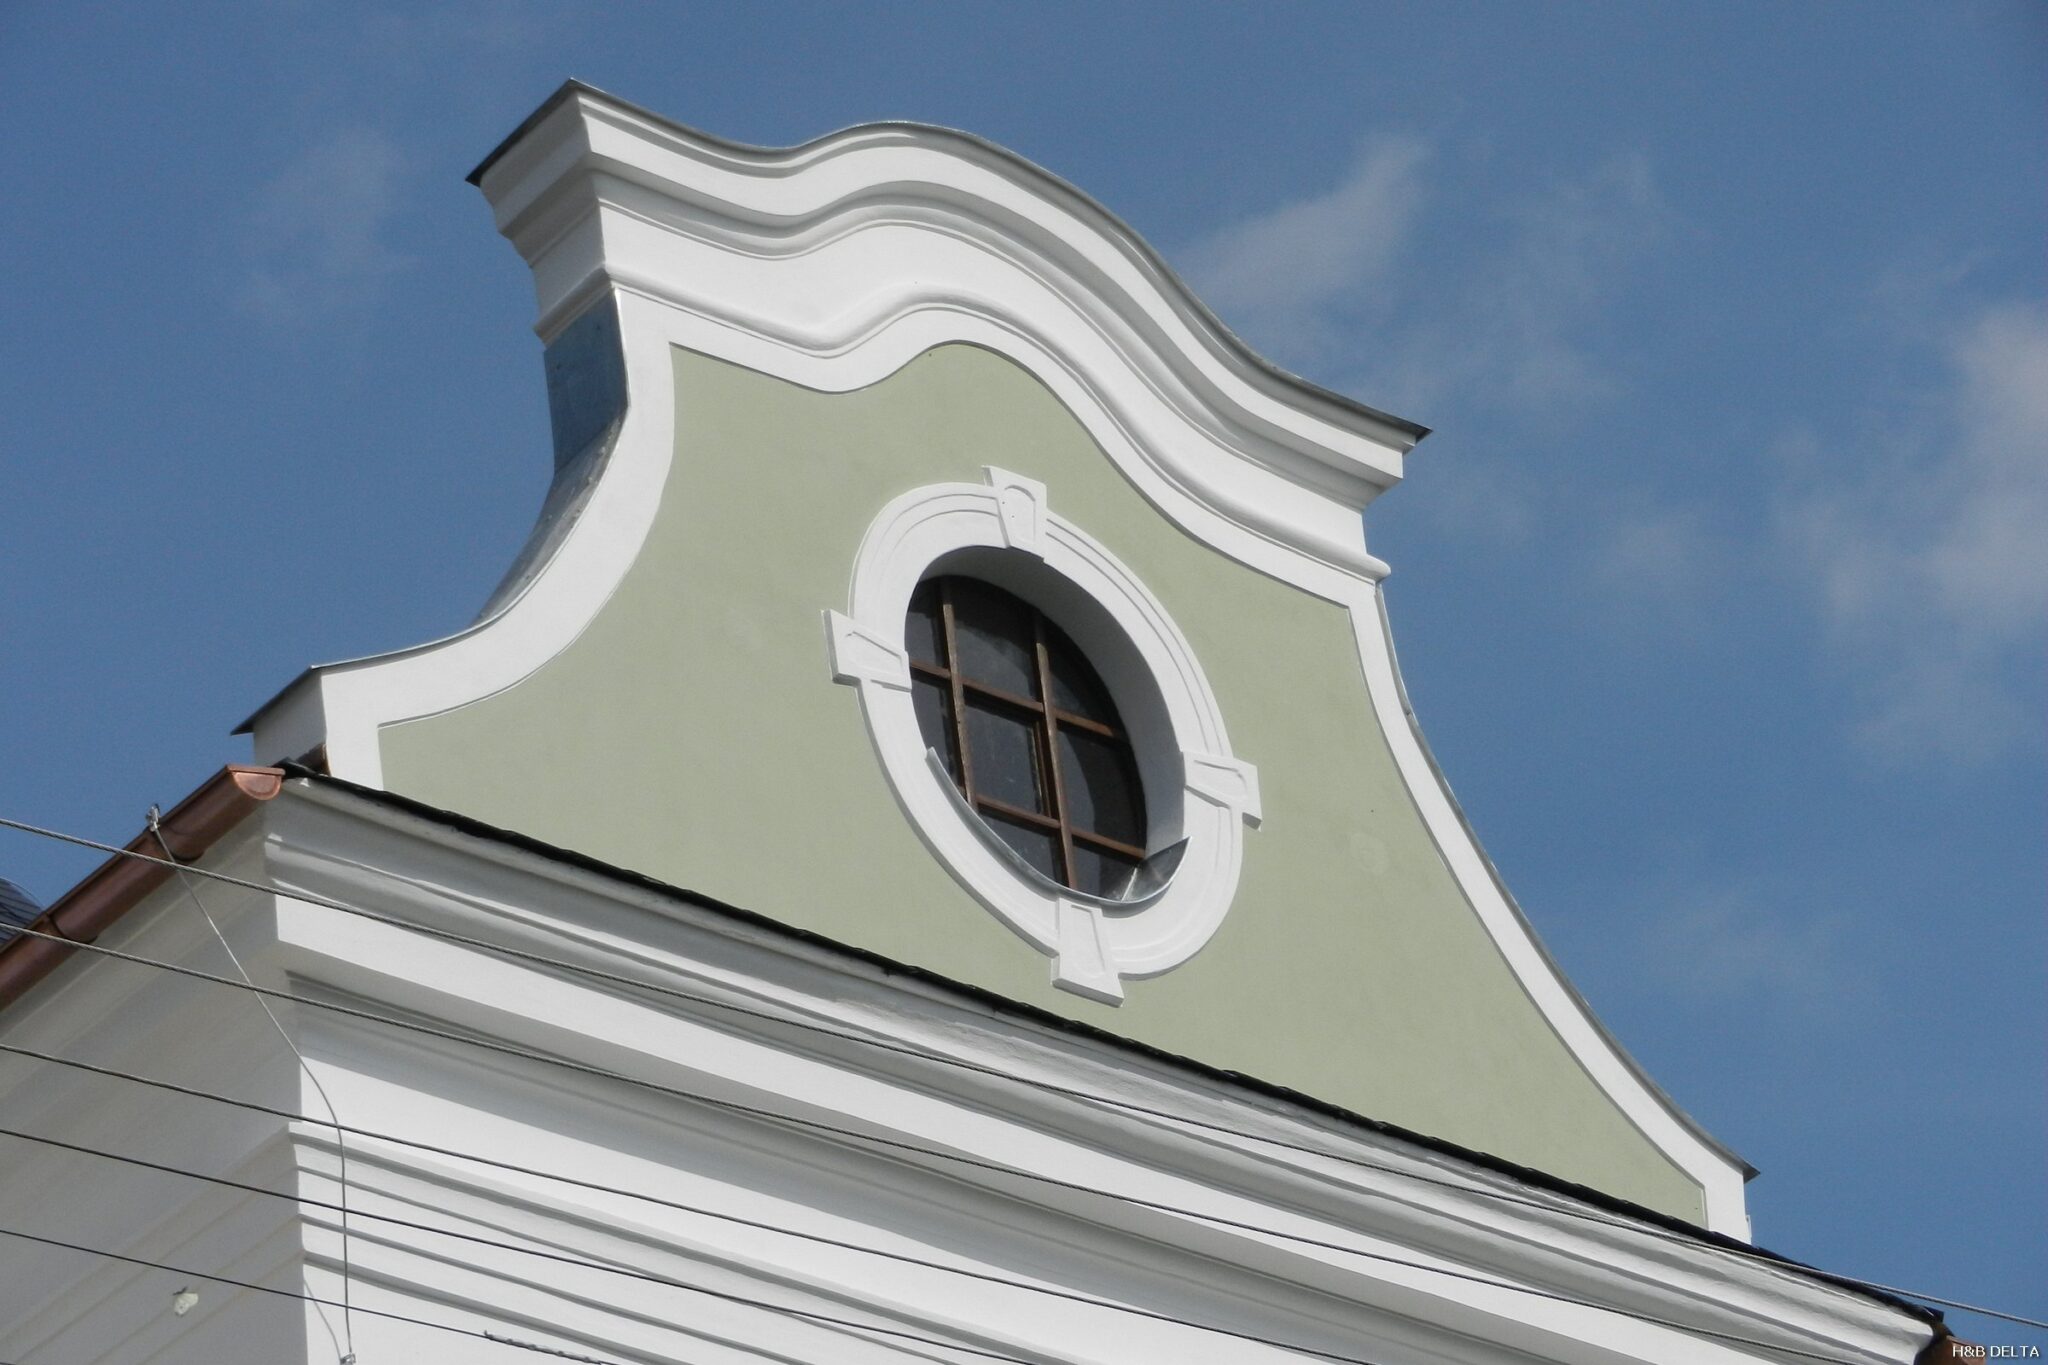 Kostel sv. Kateřiny Sosnová